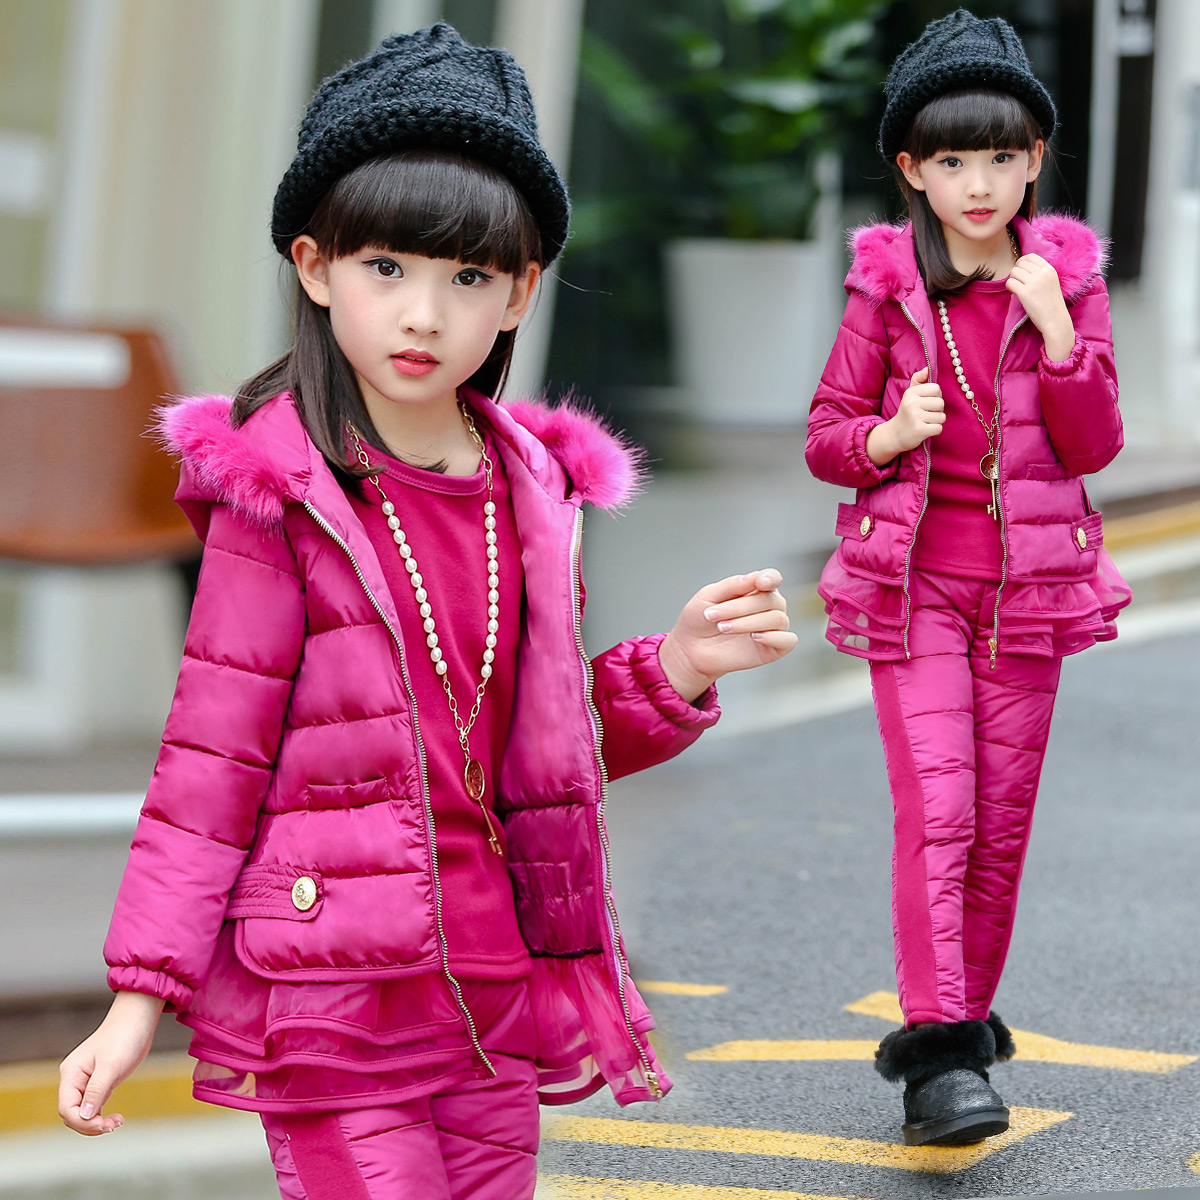 12女大童冬装套装2017新款女孩韩版洋气时尚